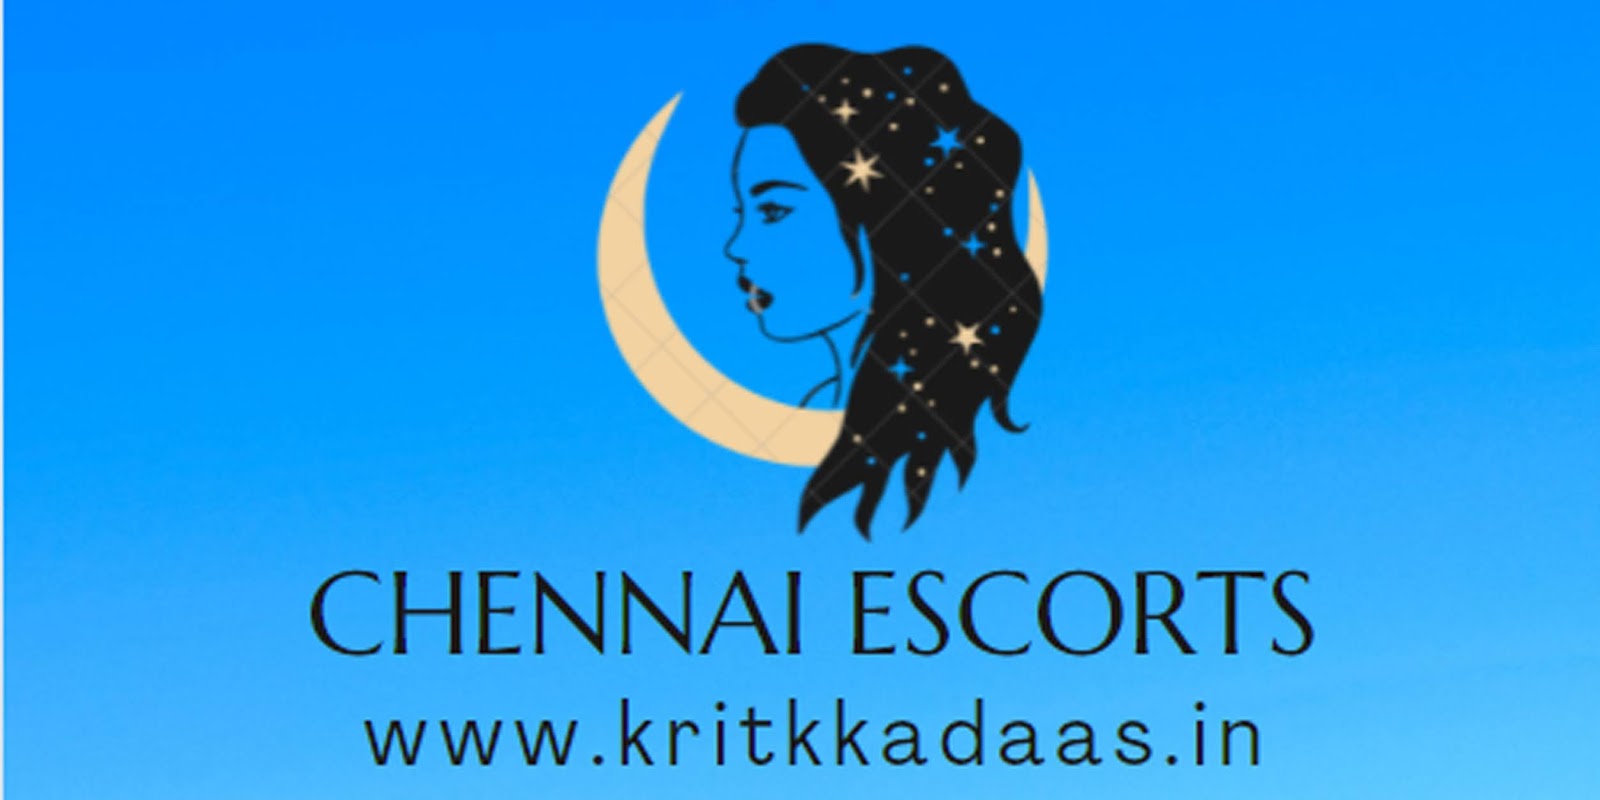 Chennai Escorts | Whatsapp Number of Glamorous Escorts in Chennai